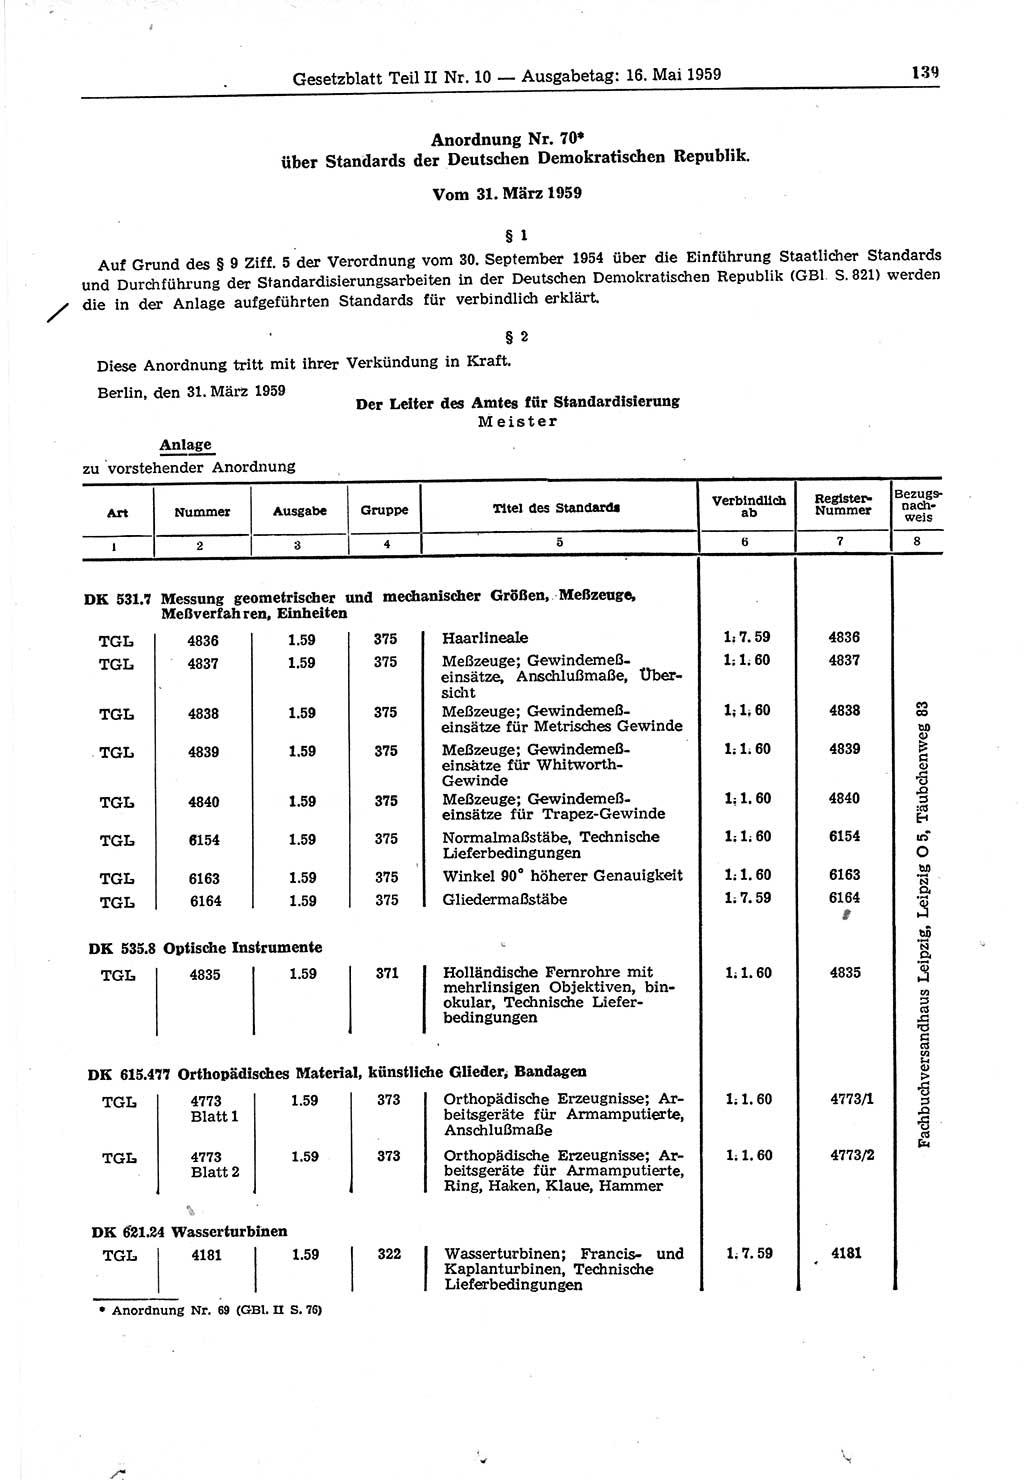 Gesetzblatt (GBl.) der Deutschen Demokratischen Republik (DDR) Teil ⅠⅠ 1959, Seite 139 (GBl. DDR ⅠⅠ 1959, S. 139)